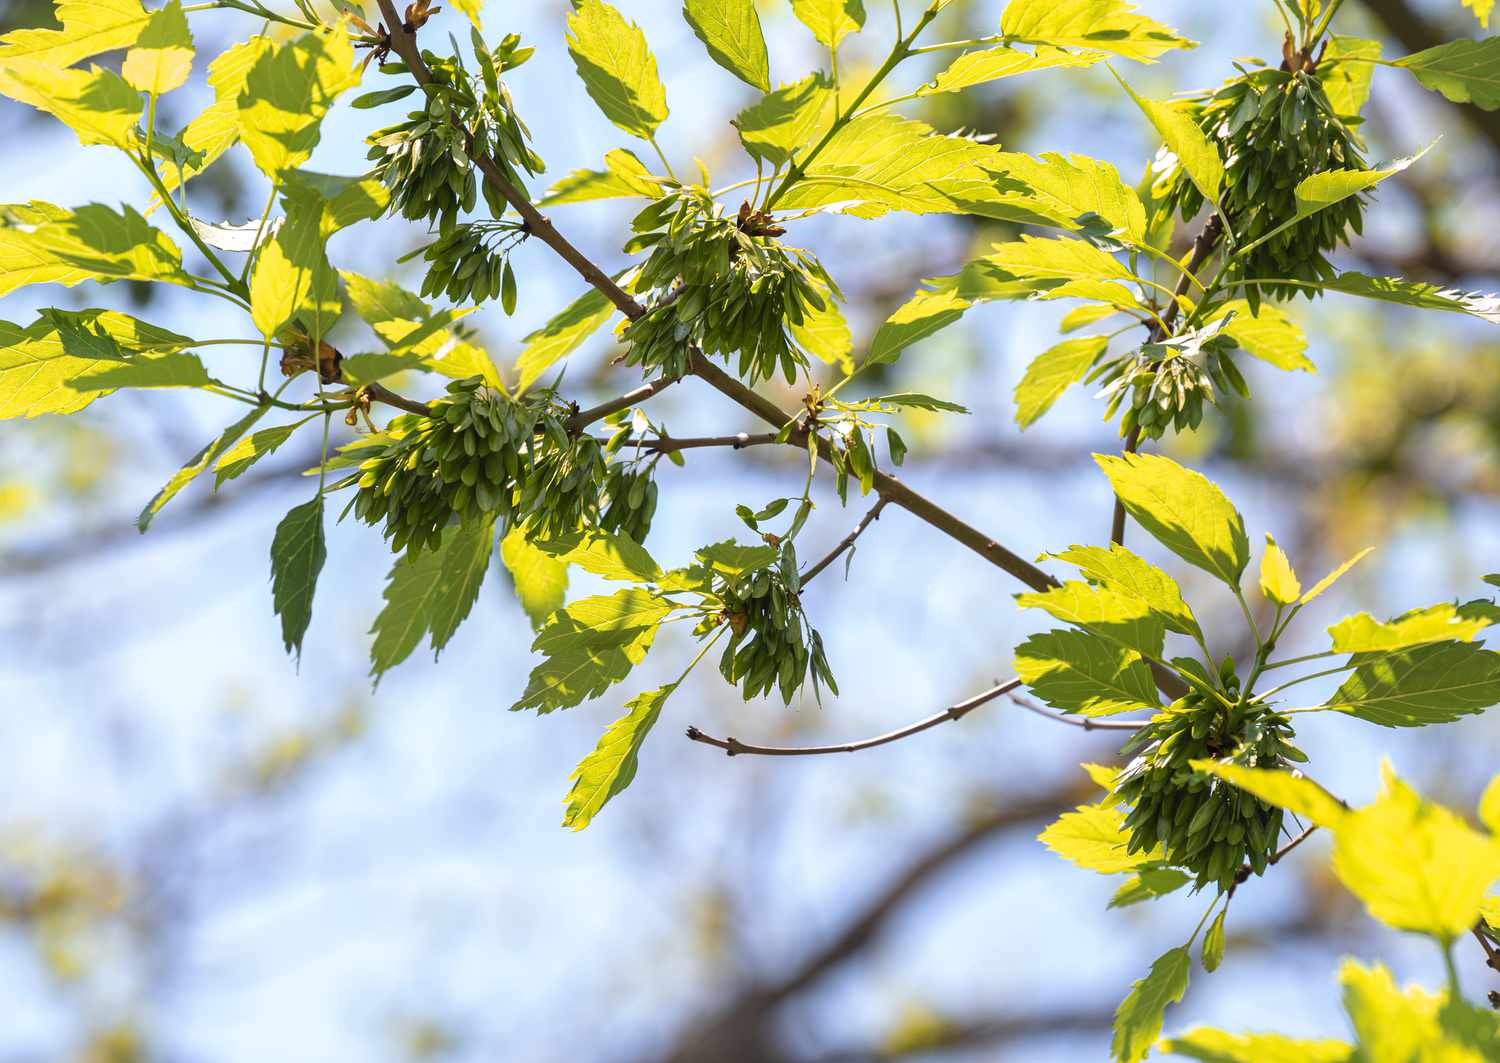 Zweig der Europäischen Esche mit gelb-grünen Blättern und neuen Blattbüscheln